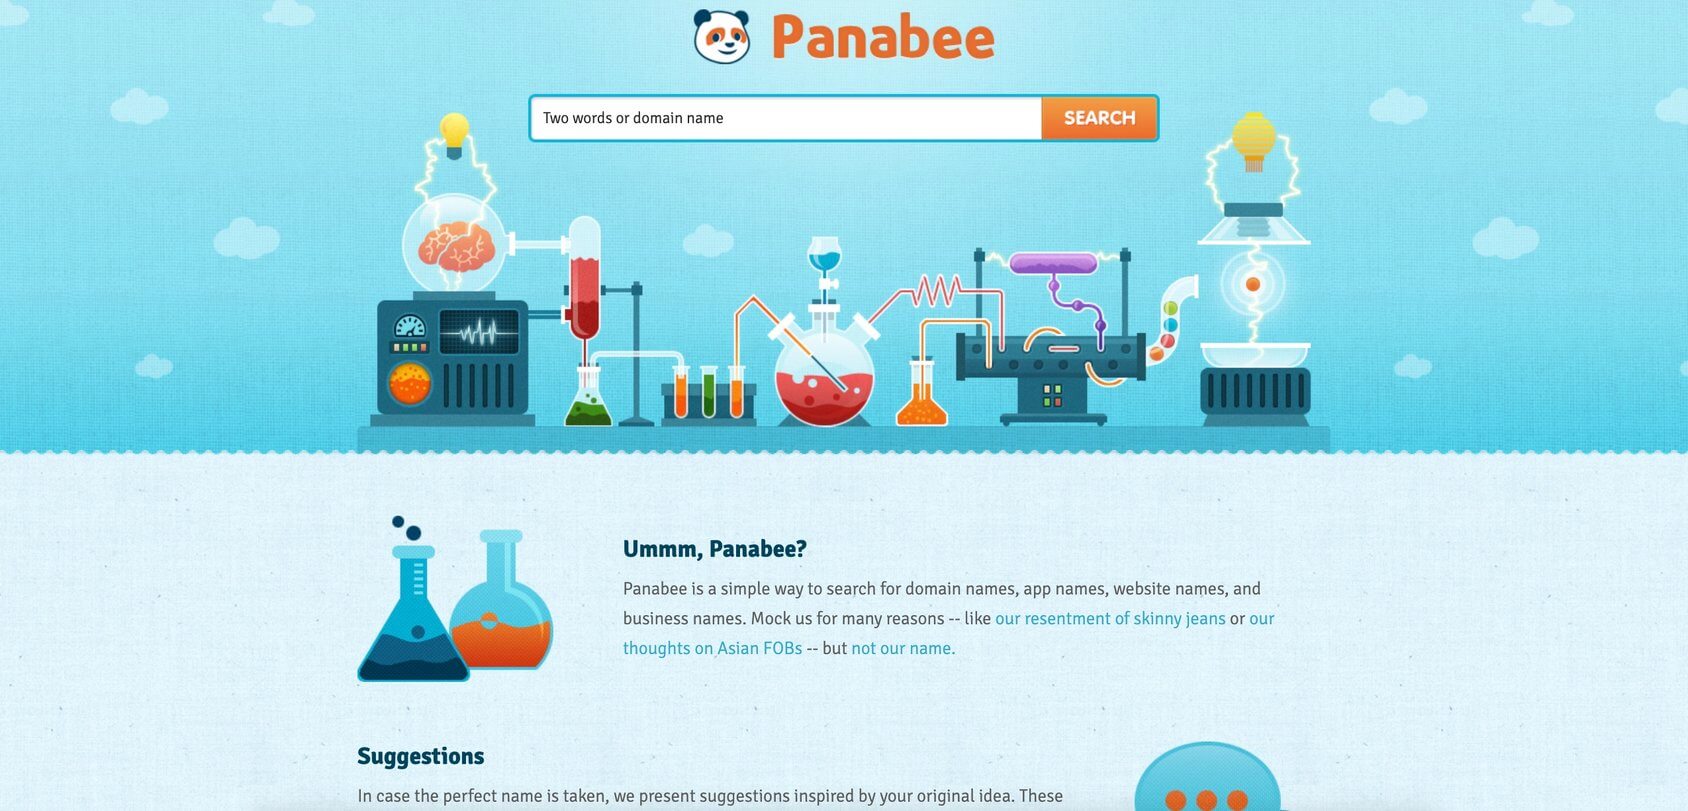 Panabee homepage